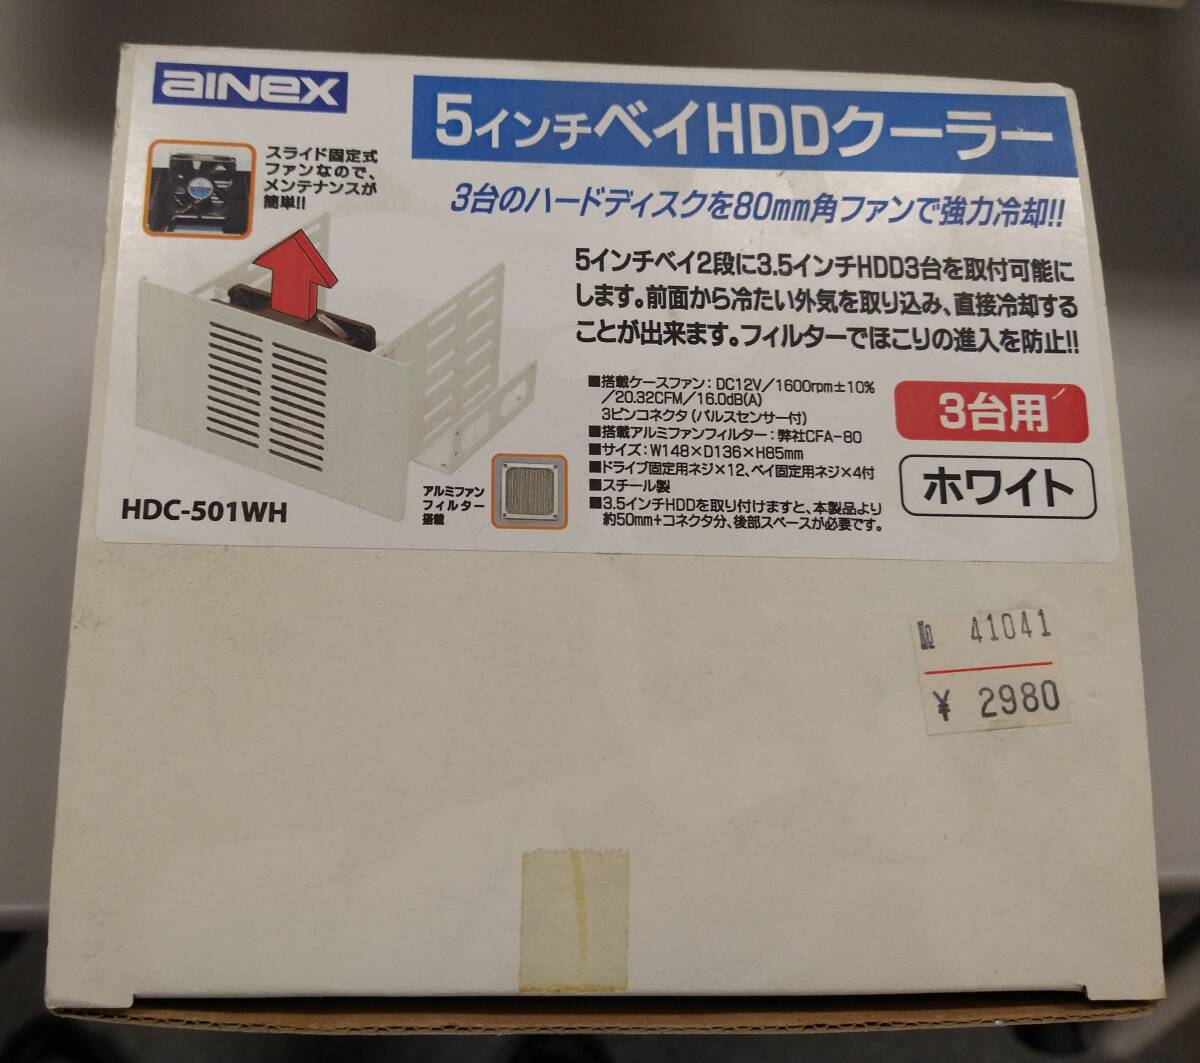 5 дюймовый Bay HDD кондиционер HDC-501WH